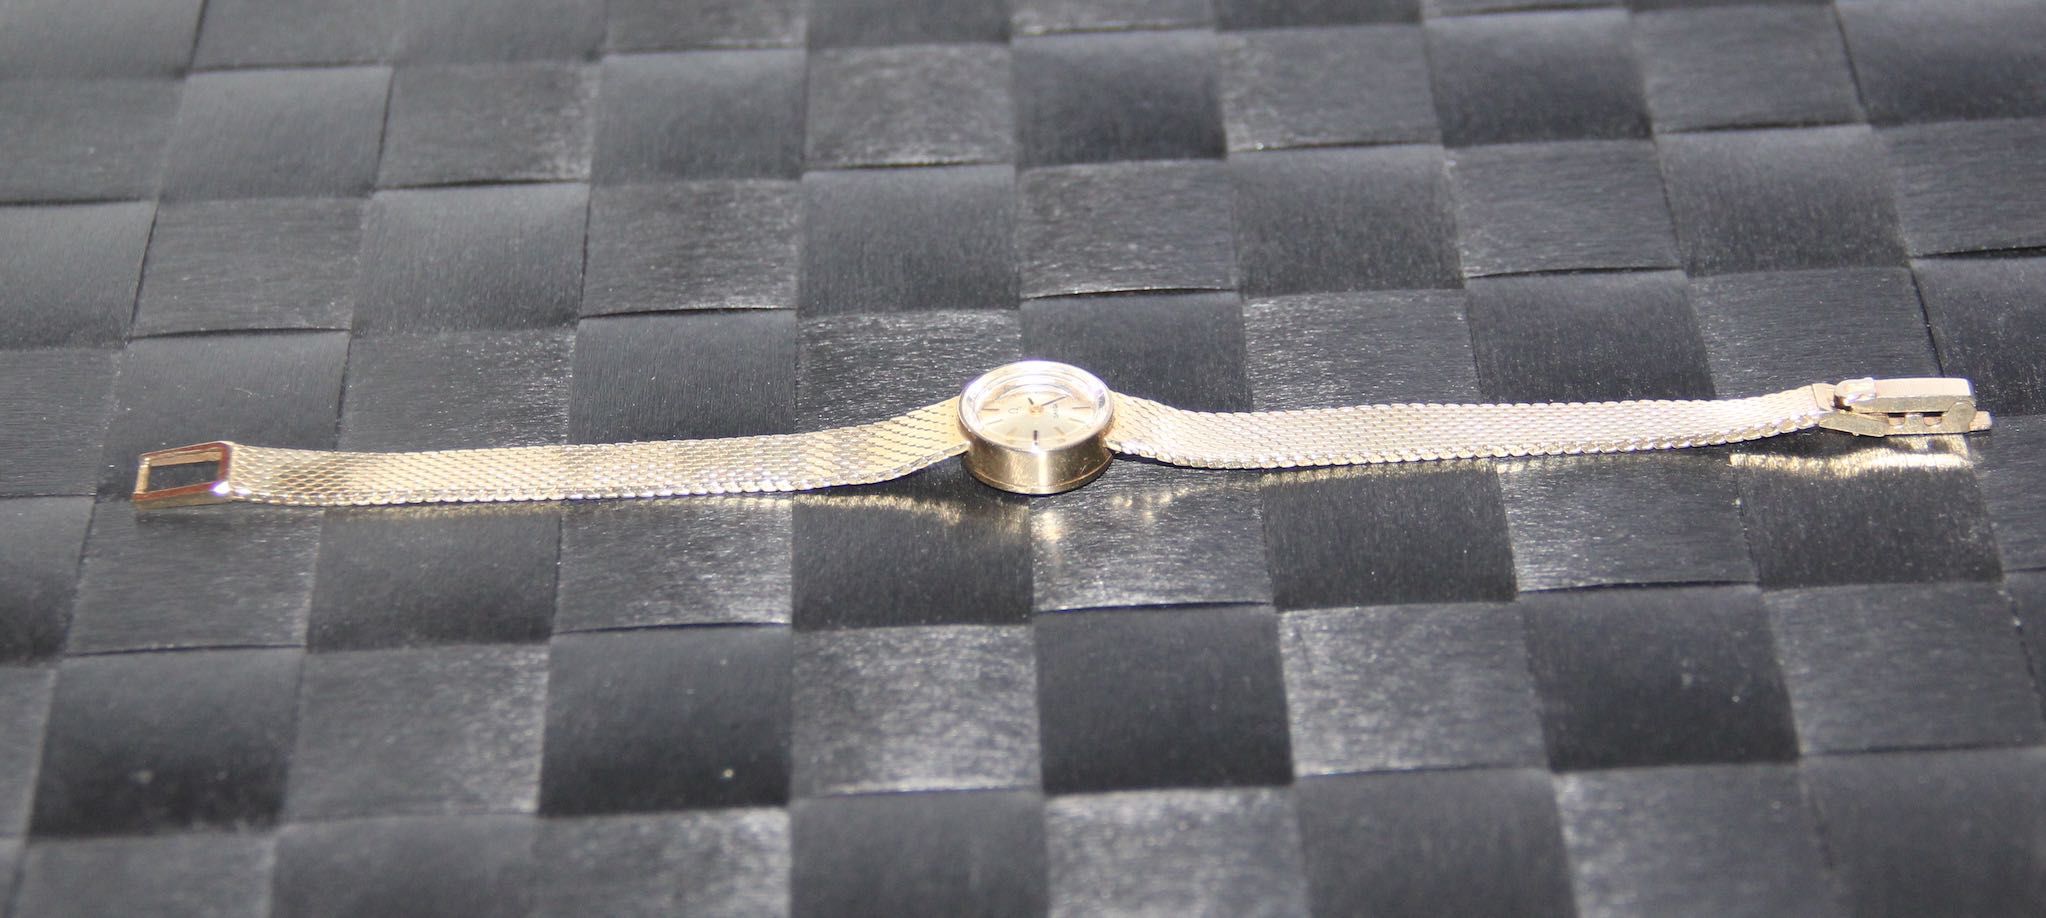 omega złoty zegarek damski naręczny złoto 585 bransoletka nakręcany